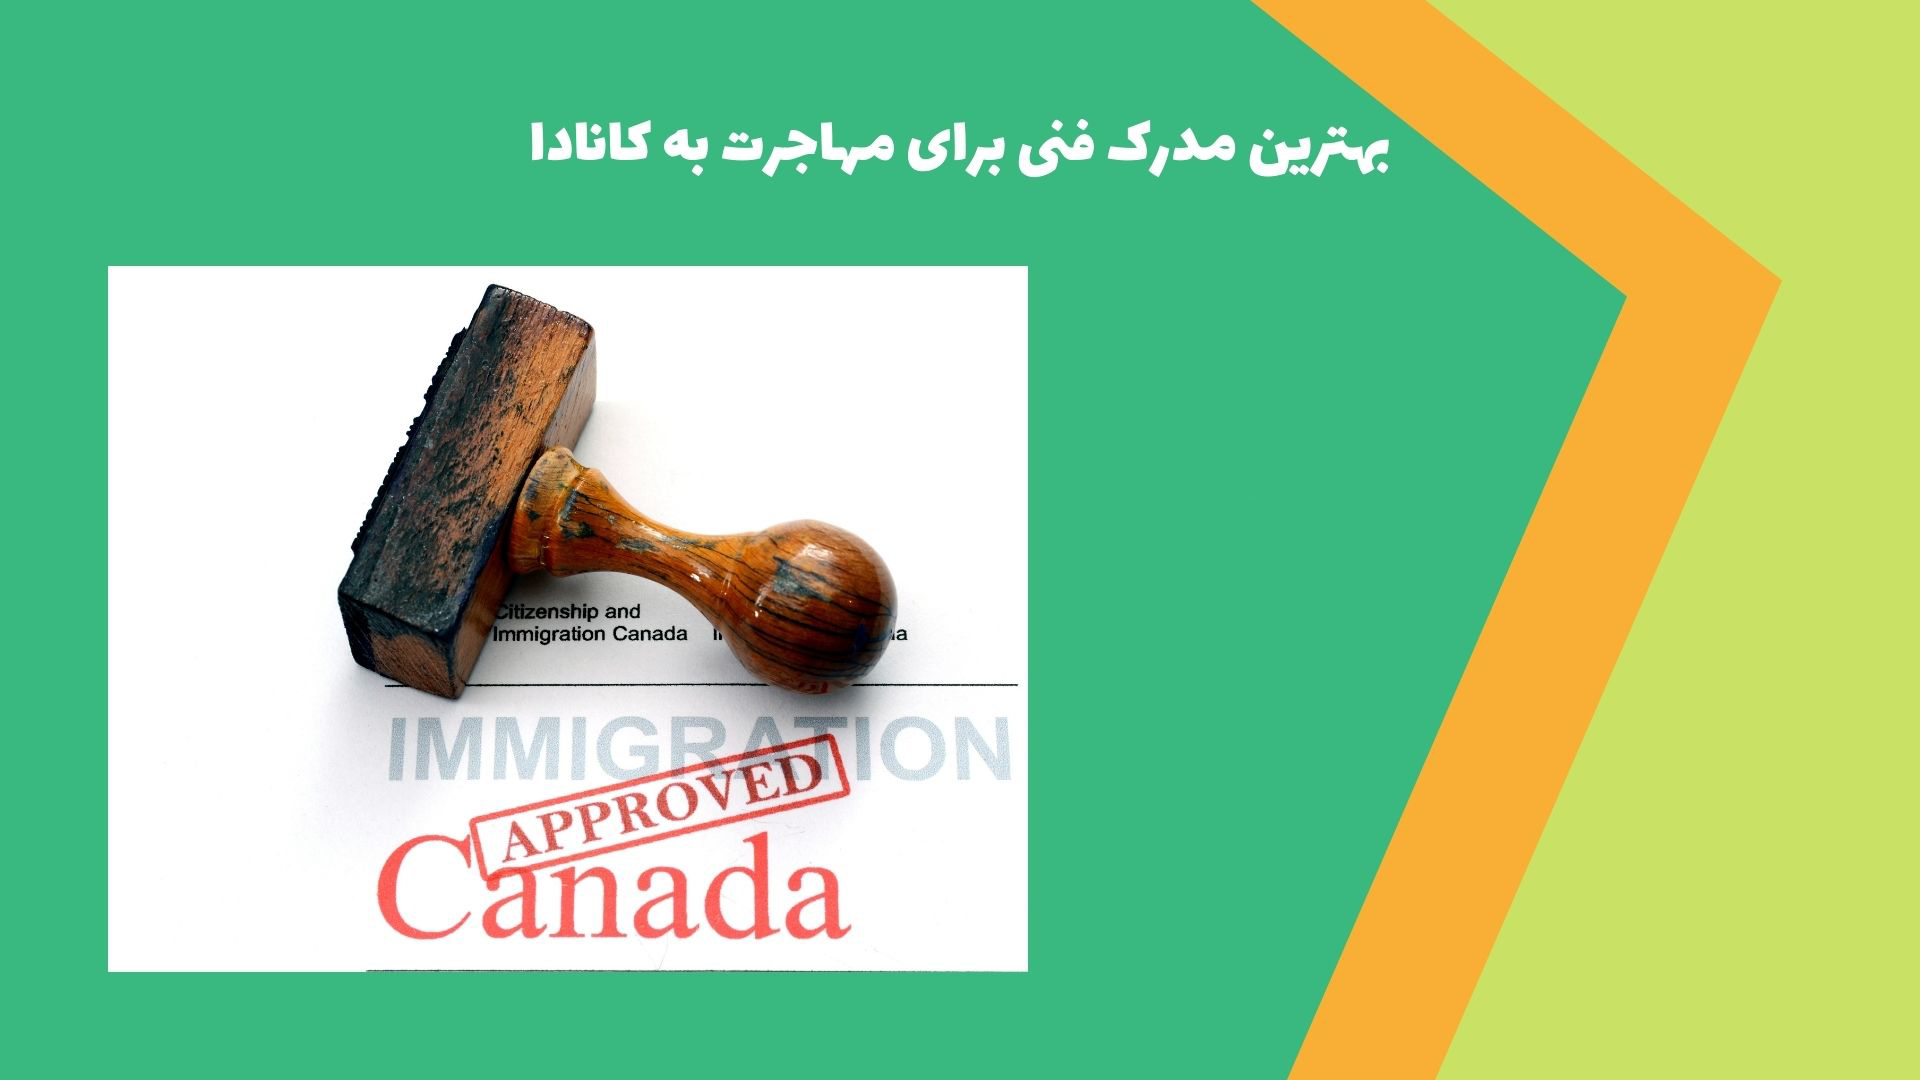 بهترین مدرک فنی برای مهاجرت به کانادا